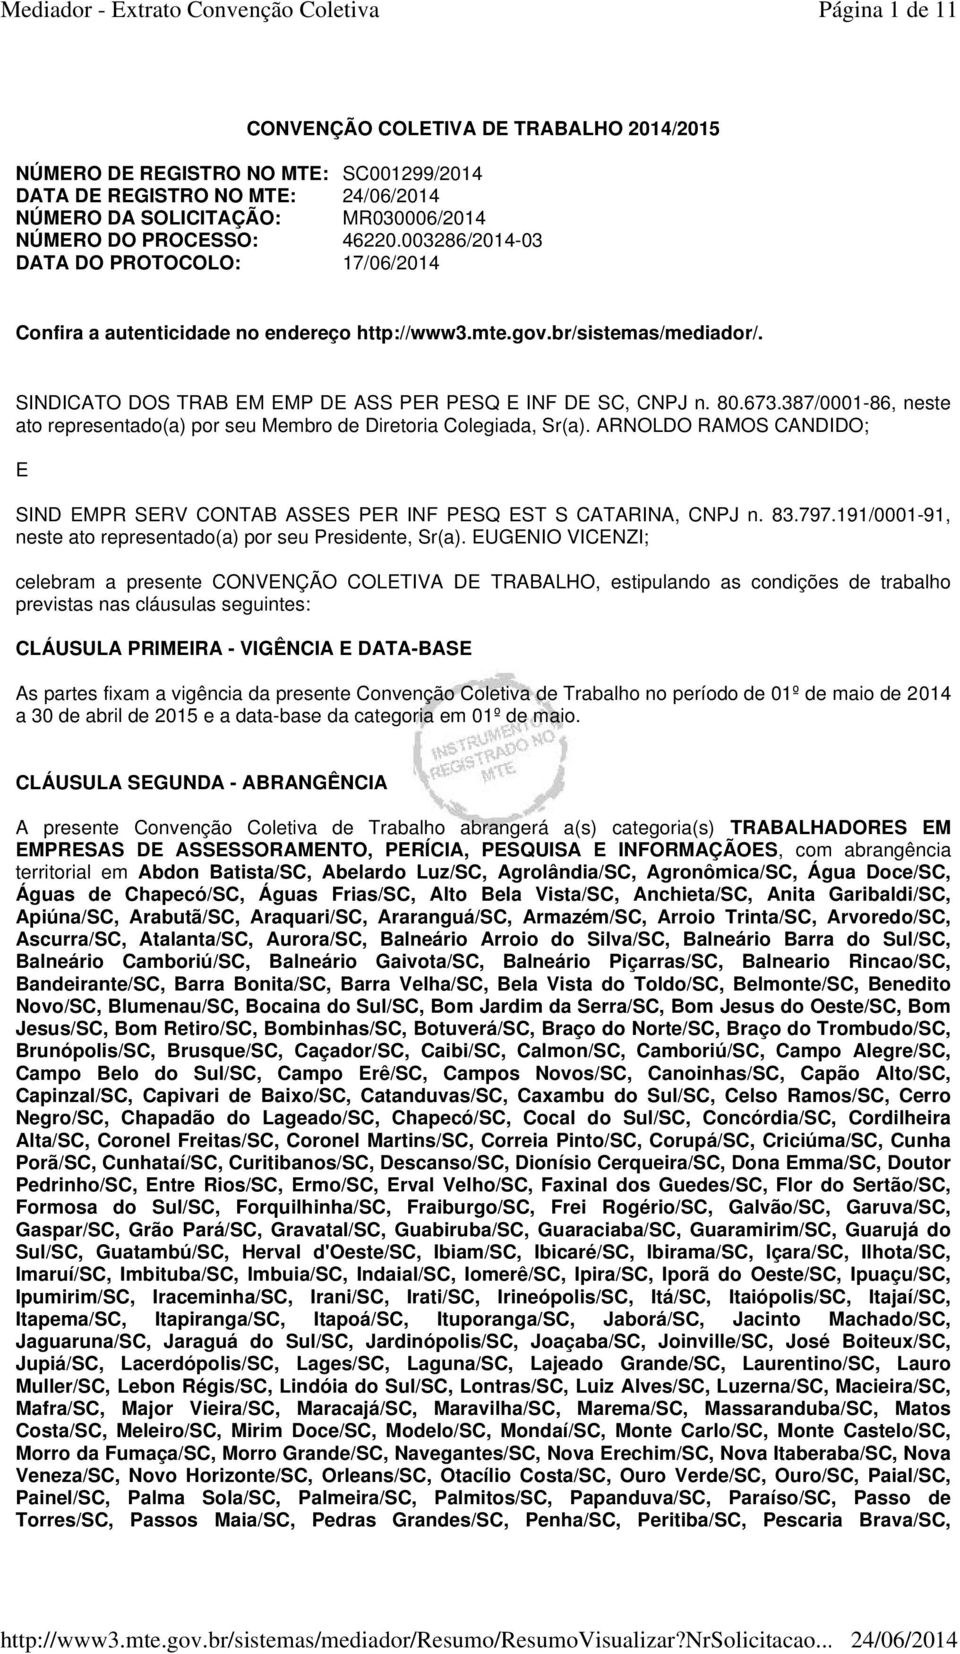 387/0001-86, neste ato representado(a) por seu Membro de Diretoria Colegiada, Sr(a). ARNOLDO RAMOS CANDIDO; E SIND EMPR SERV CONTAB ASSES PER INF PESQ EST S CATARINA, CNPJ n. 83.797.